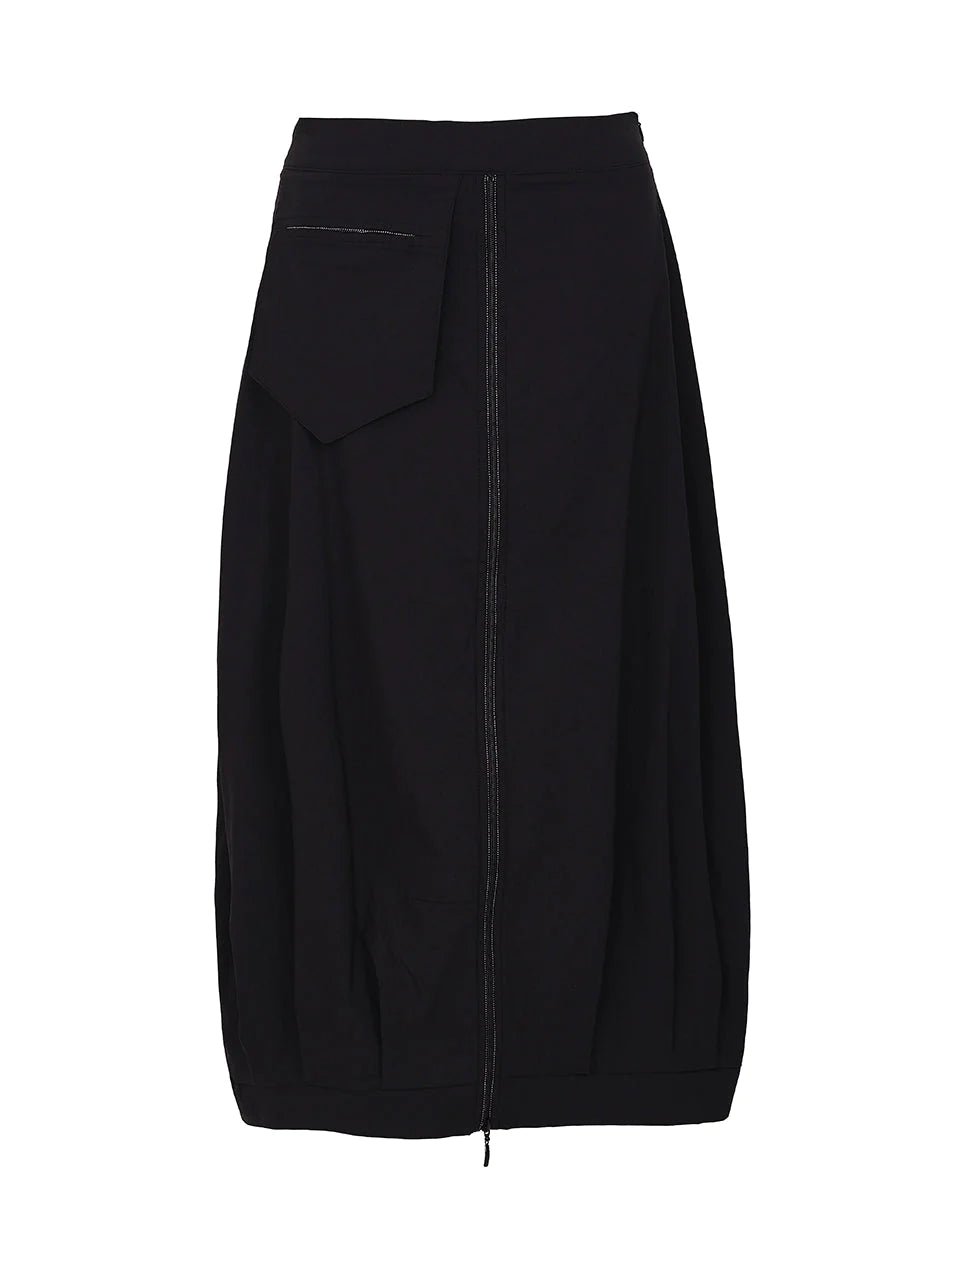 Zip Up Pencil Skirt In Jet Black – KLARRA